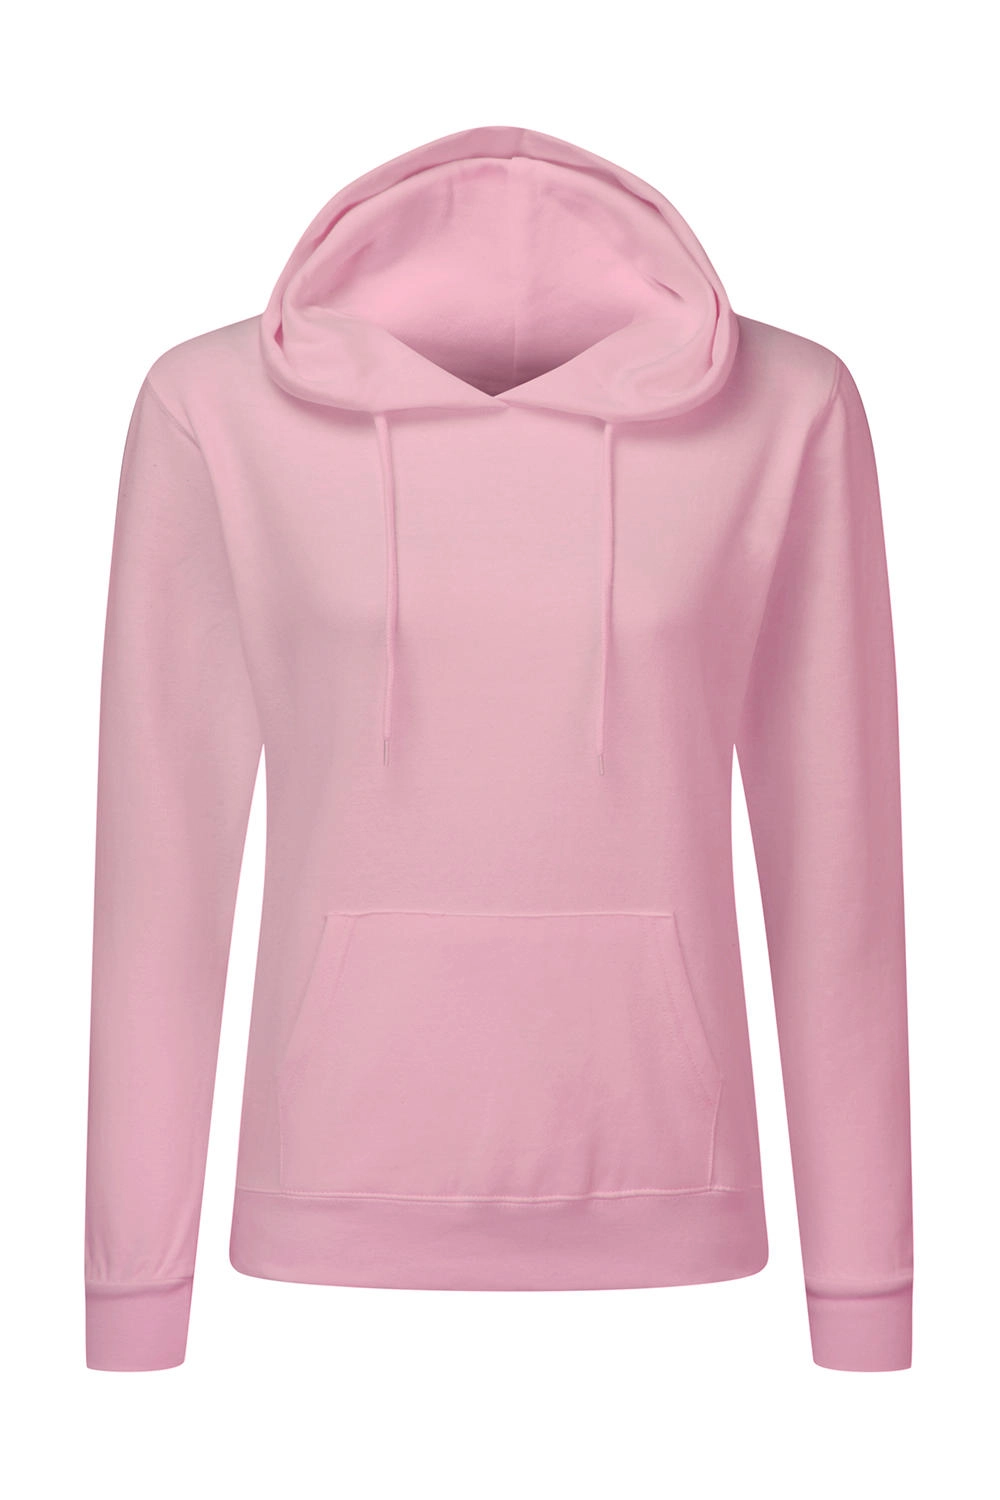 Hooded Sweatshirt Women zum Besticken und Bedrucken in der Farbe Pink mit Ihren Logo, Schriftzug oder Motiv.